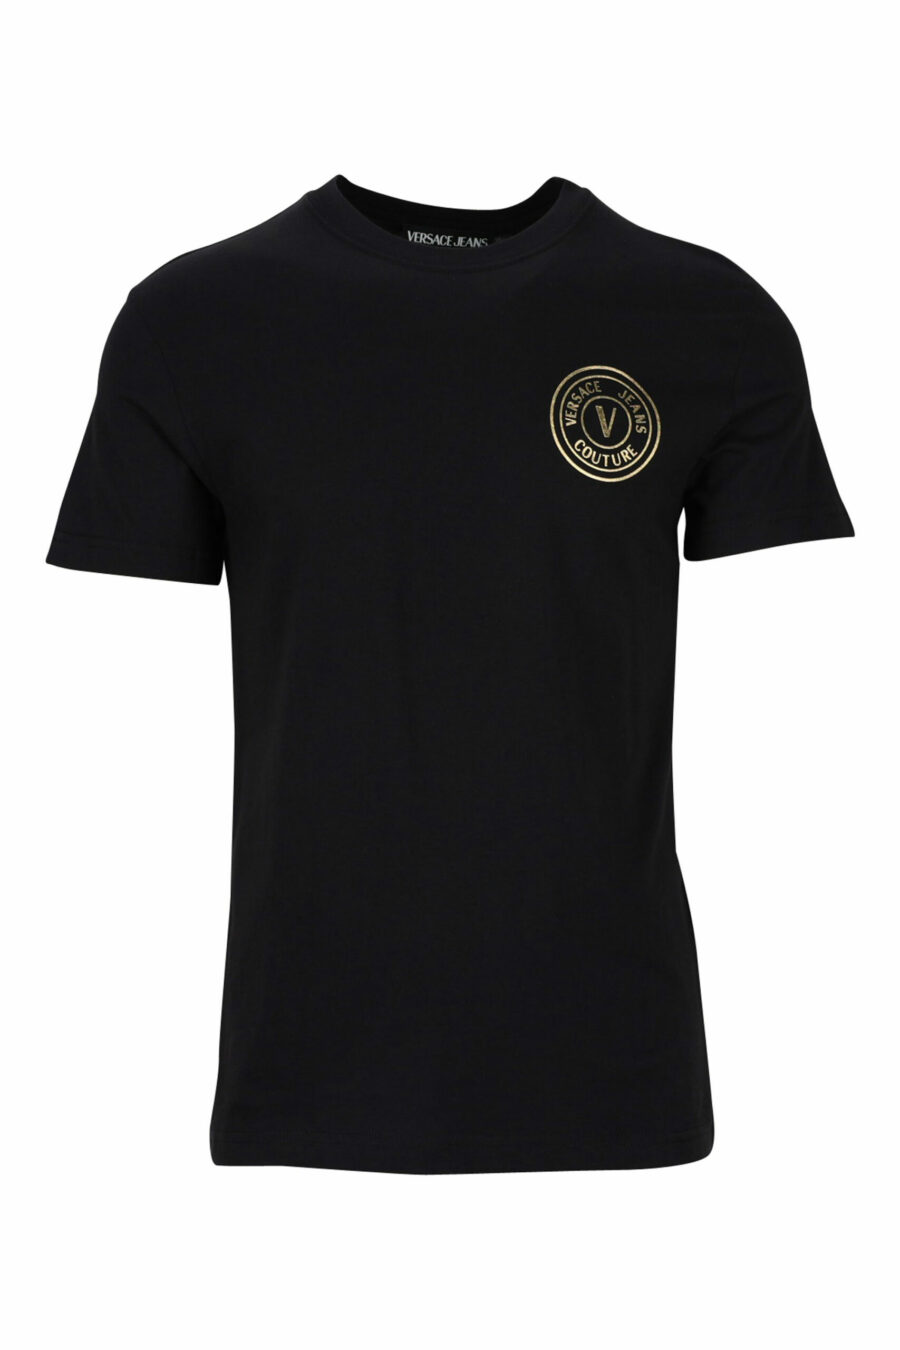 T-shirt noir avec mini-logo circulaire doré - 8052019468465 scaled